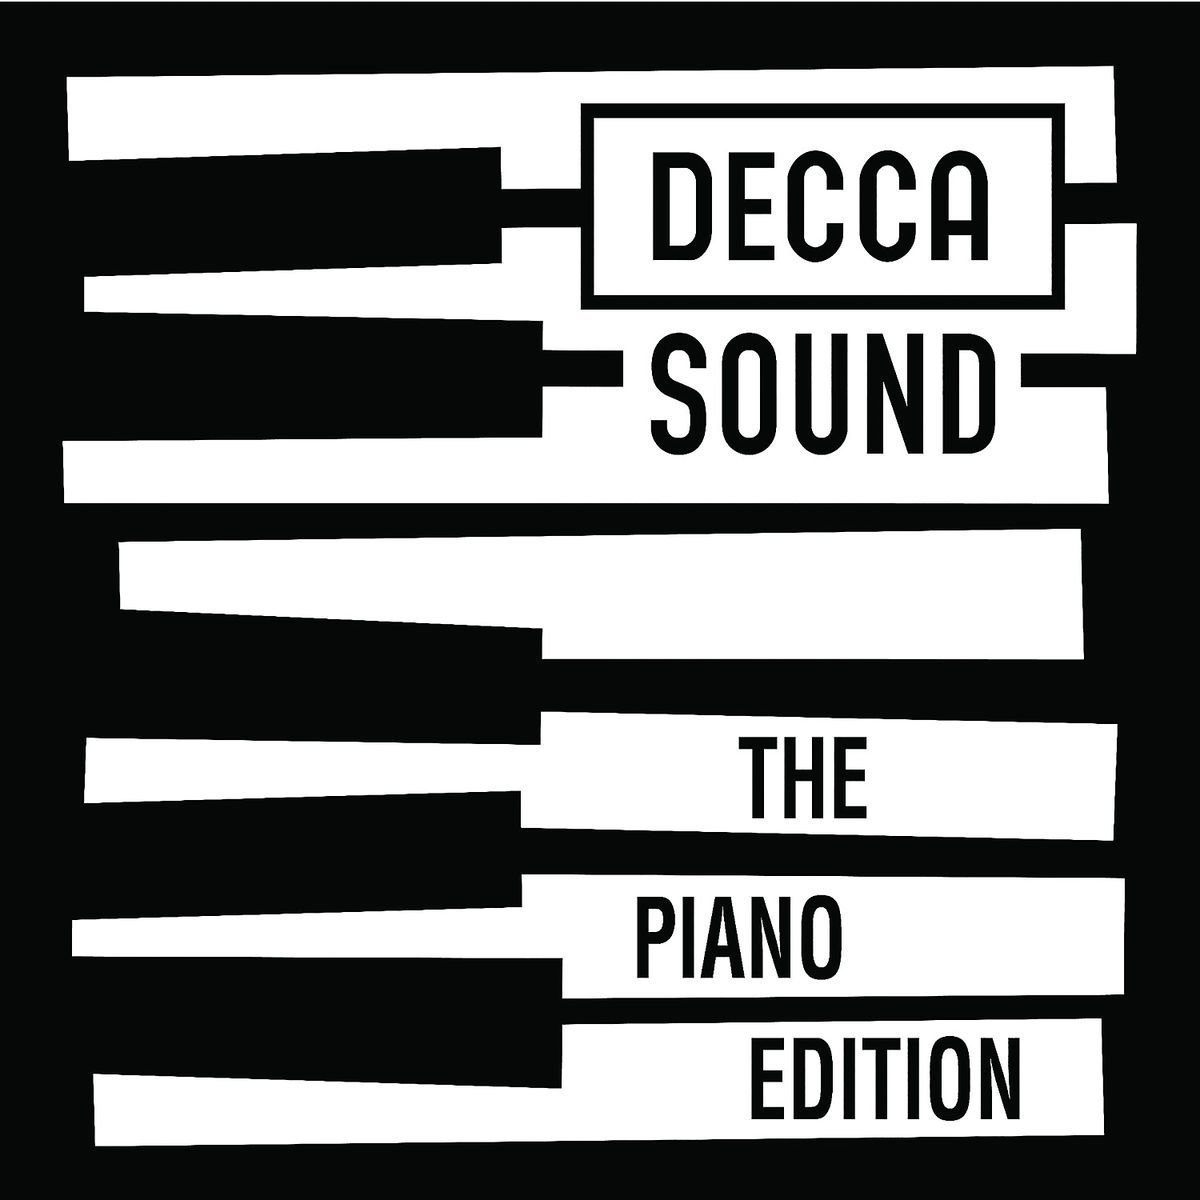 Decca Sound - The Piano Edition